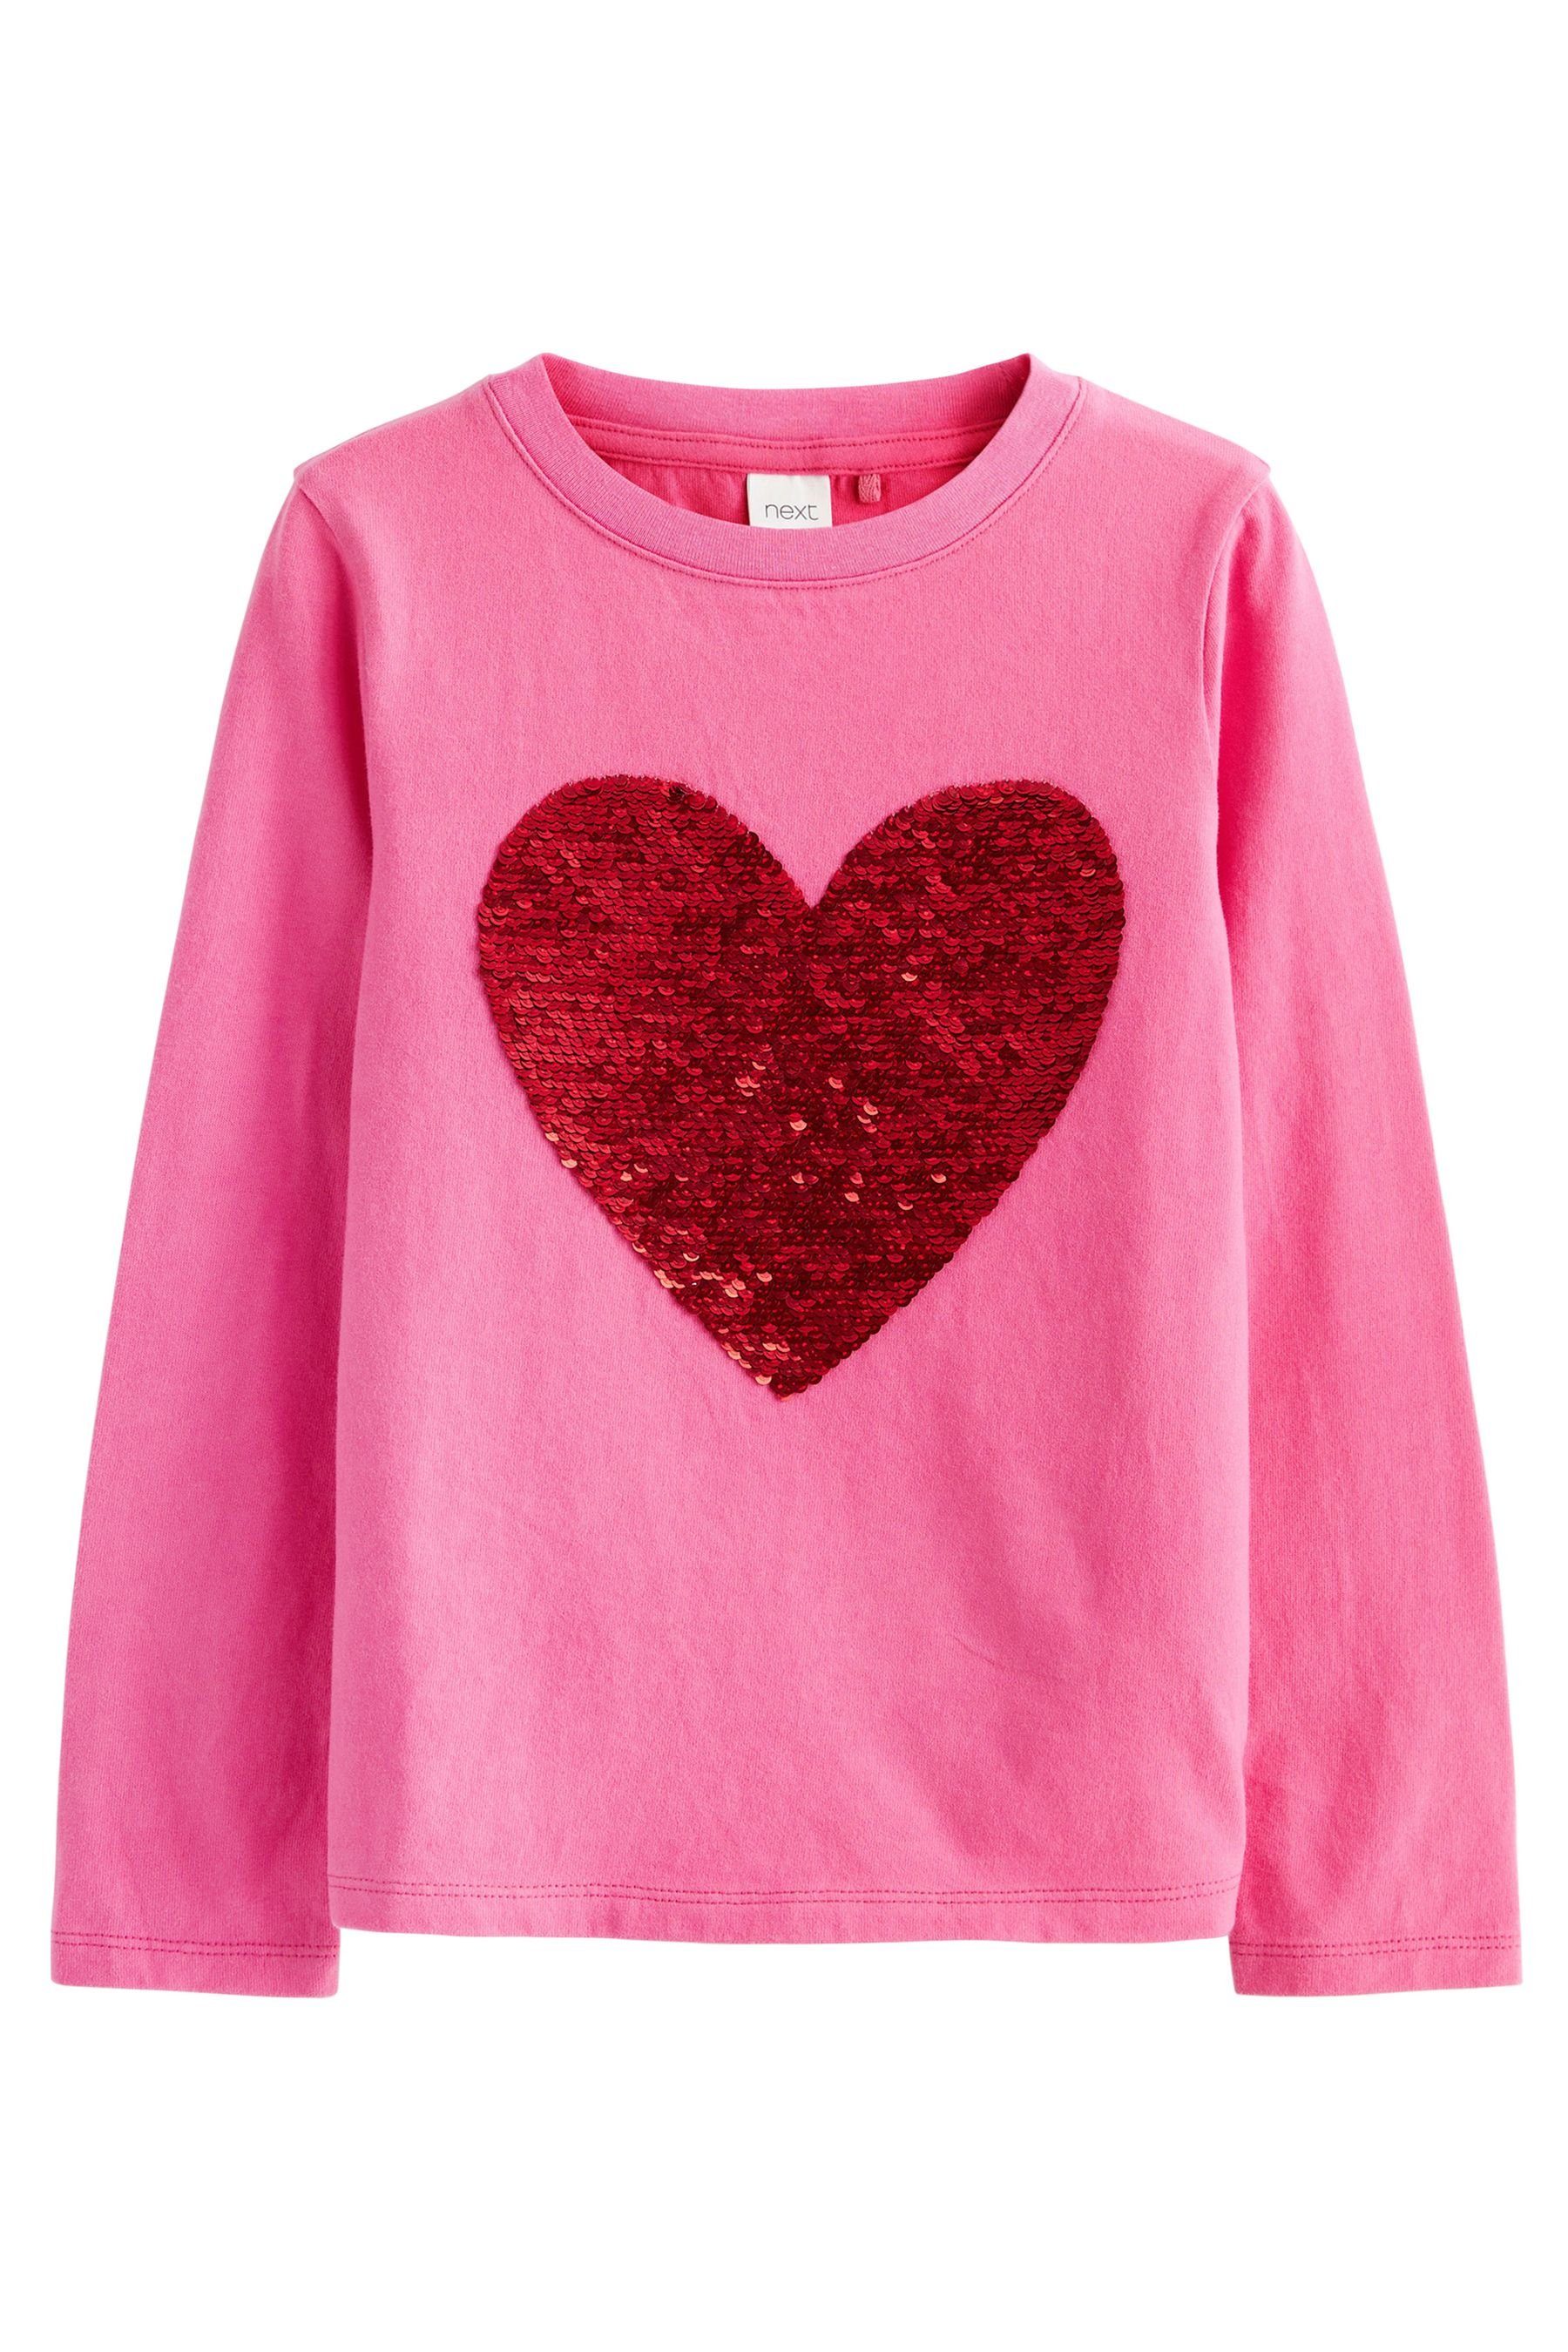 Next Langarmshirt (1-tlg) Pink/Red Heart